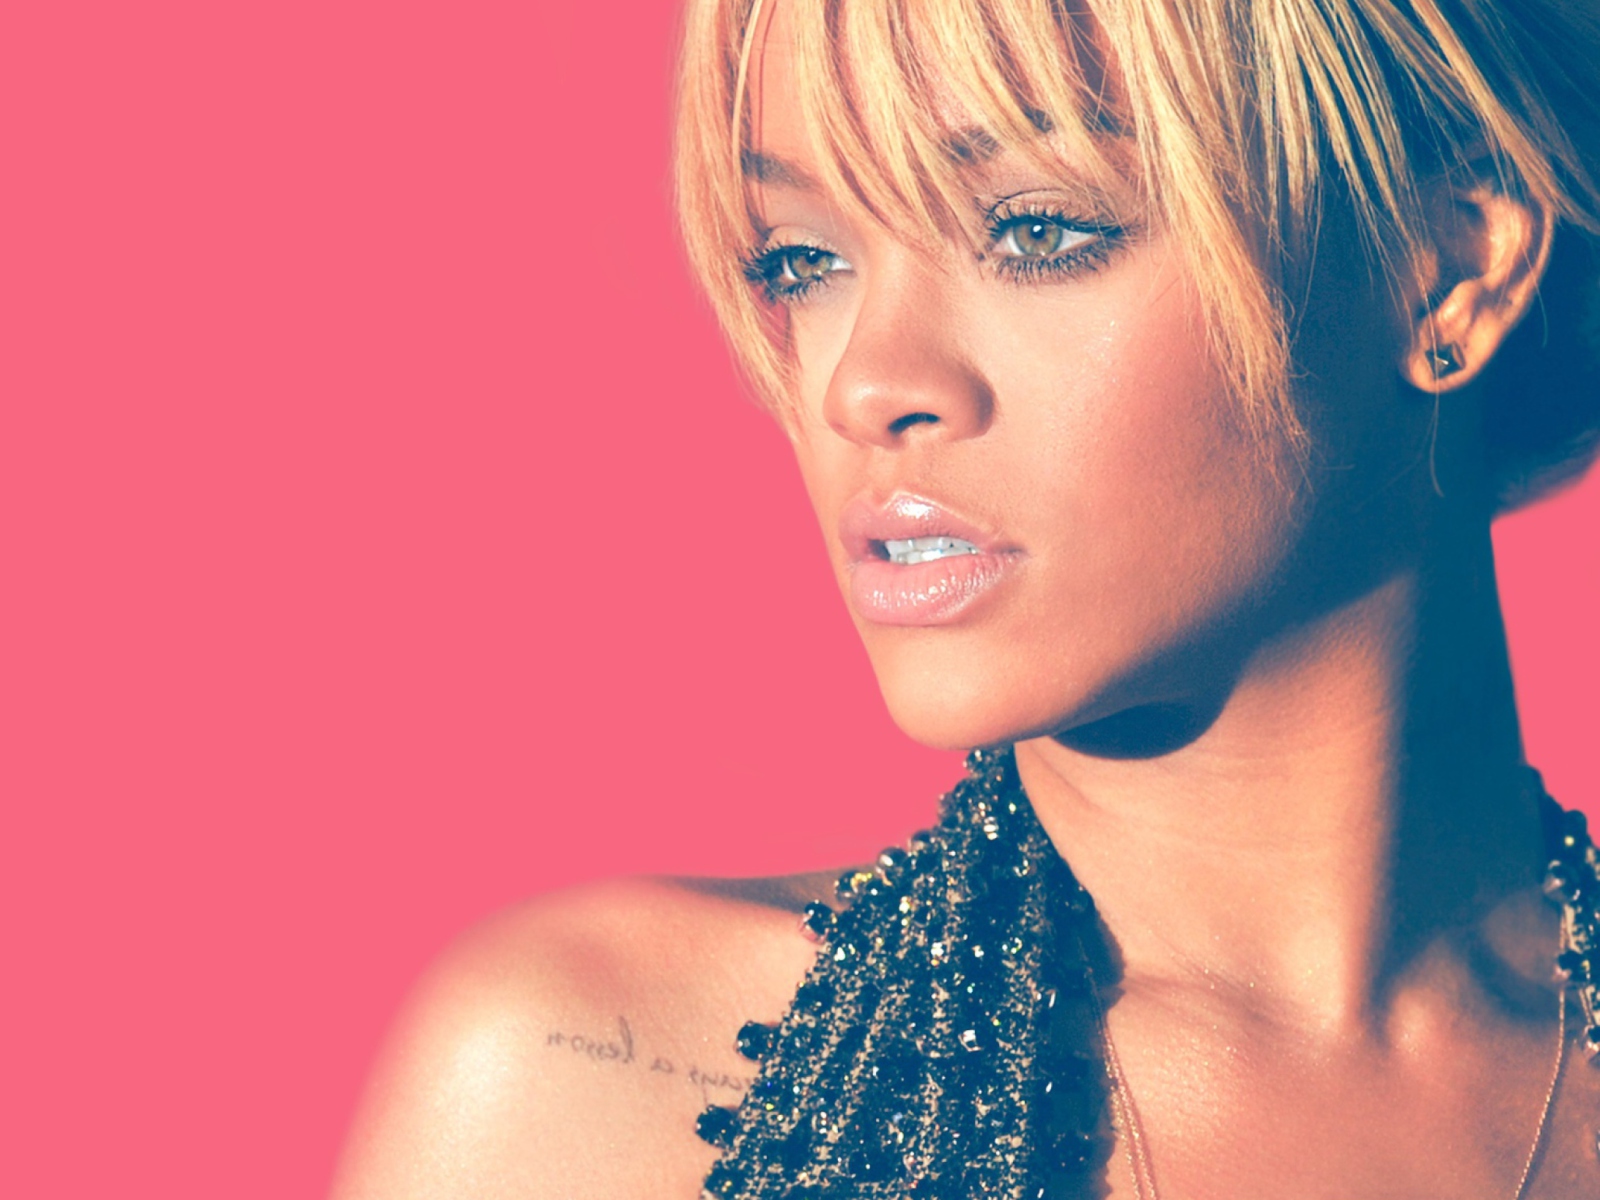 Rihanna Blonde Hair 2012 wallpaper 1600x1200